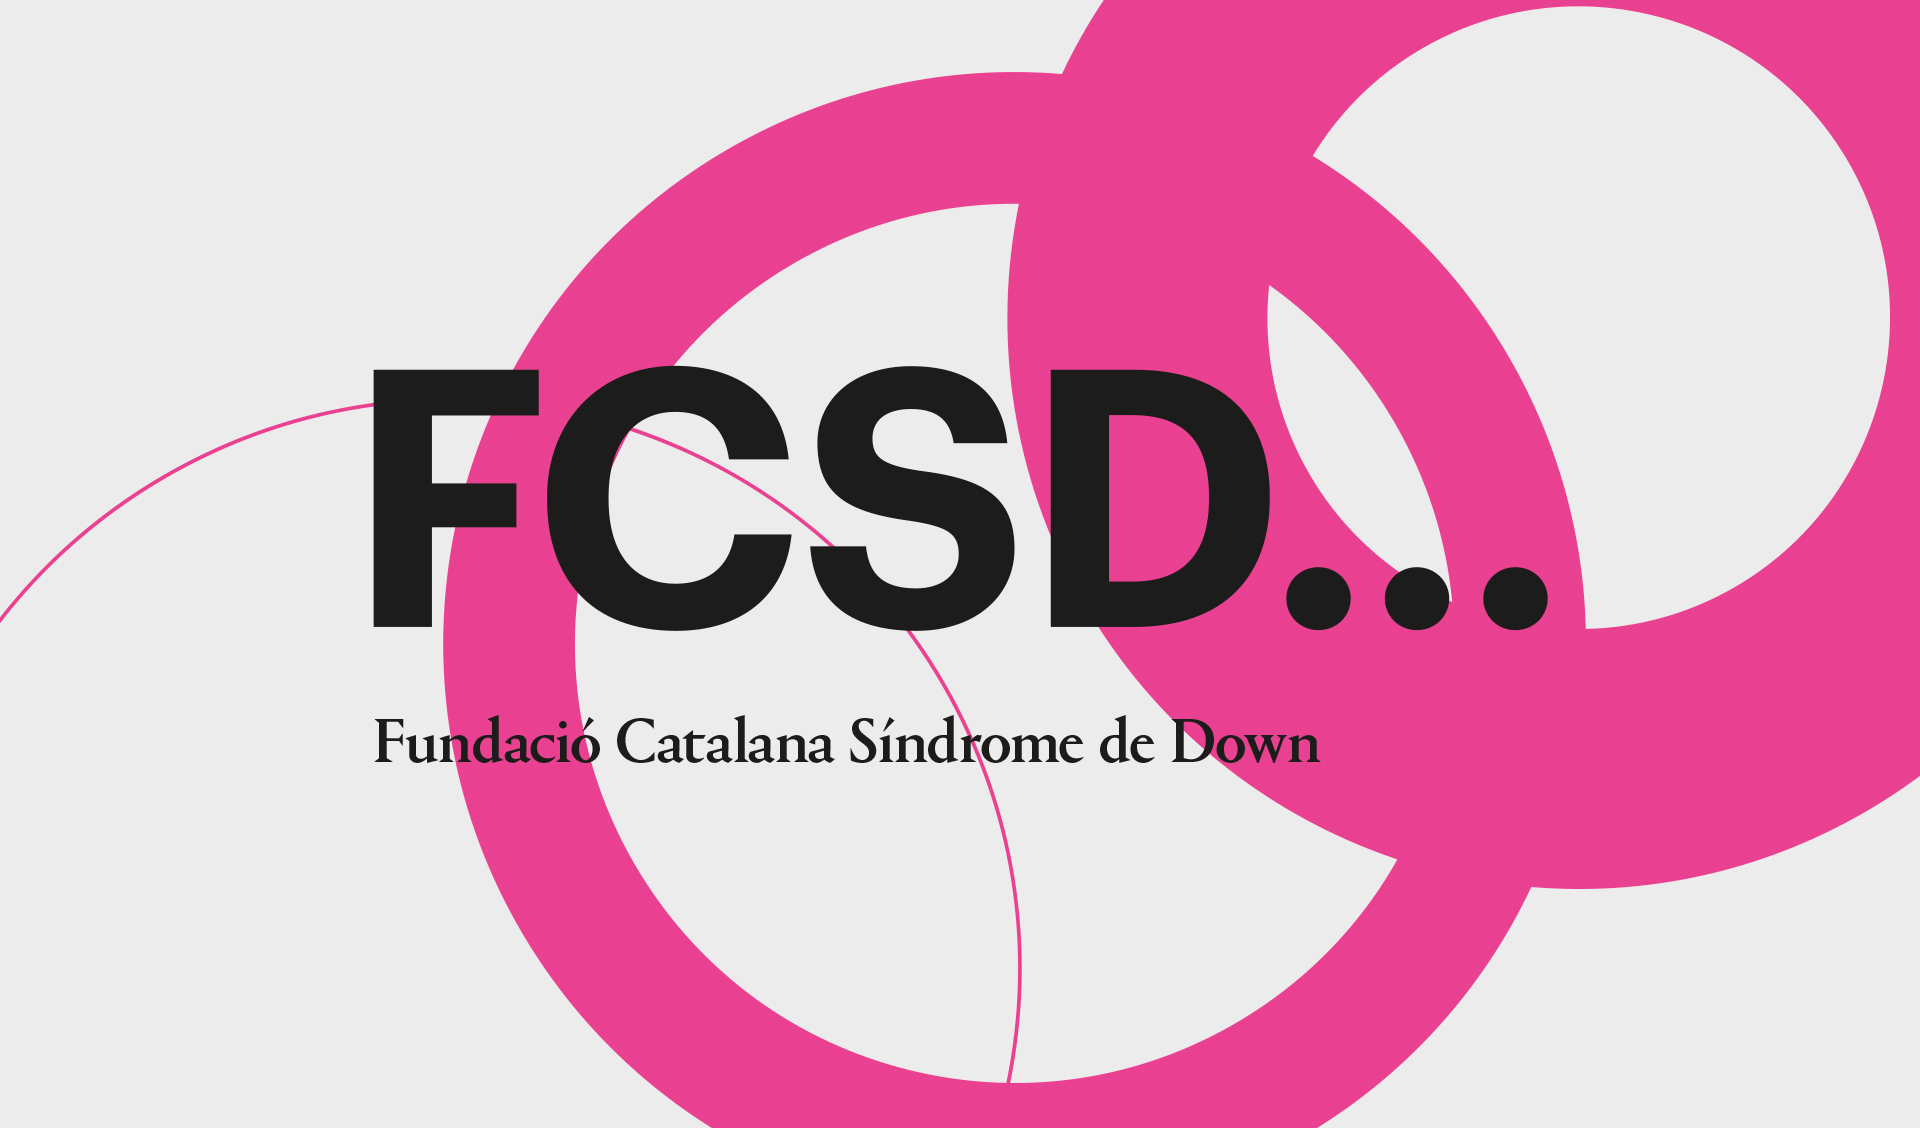 Fundación Catalana Síndrome de Down